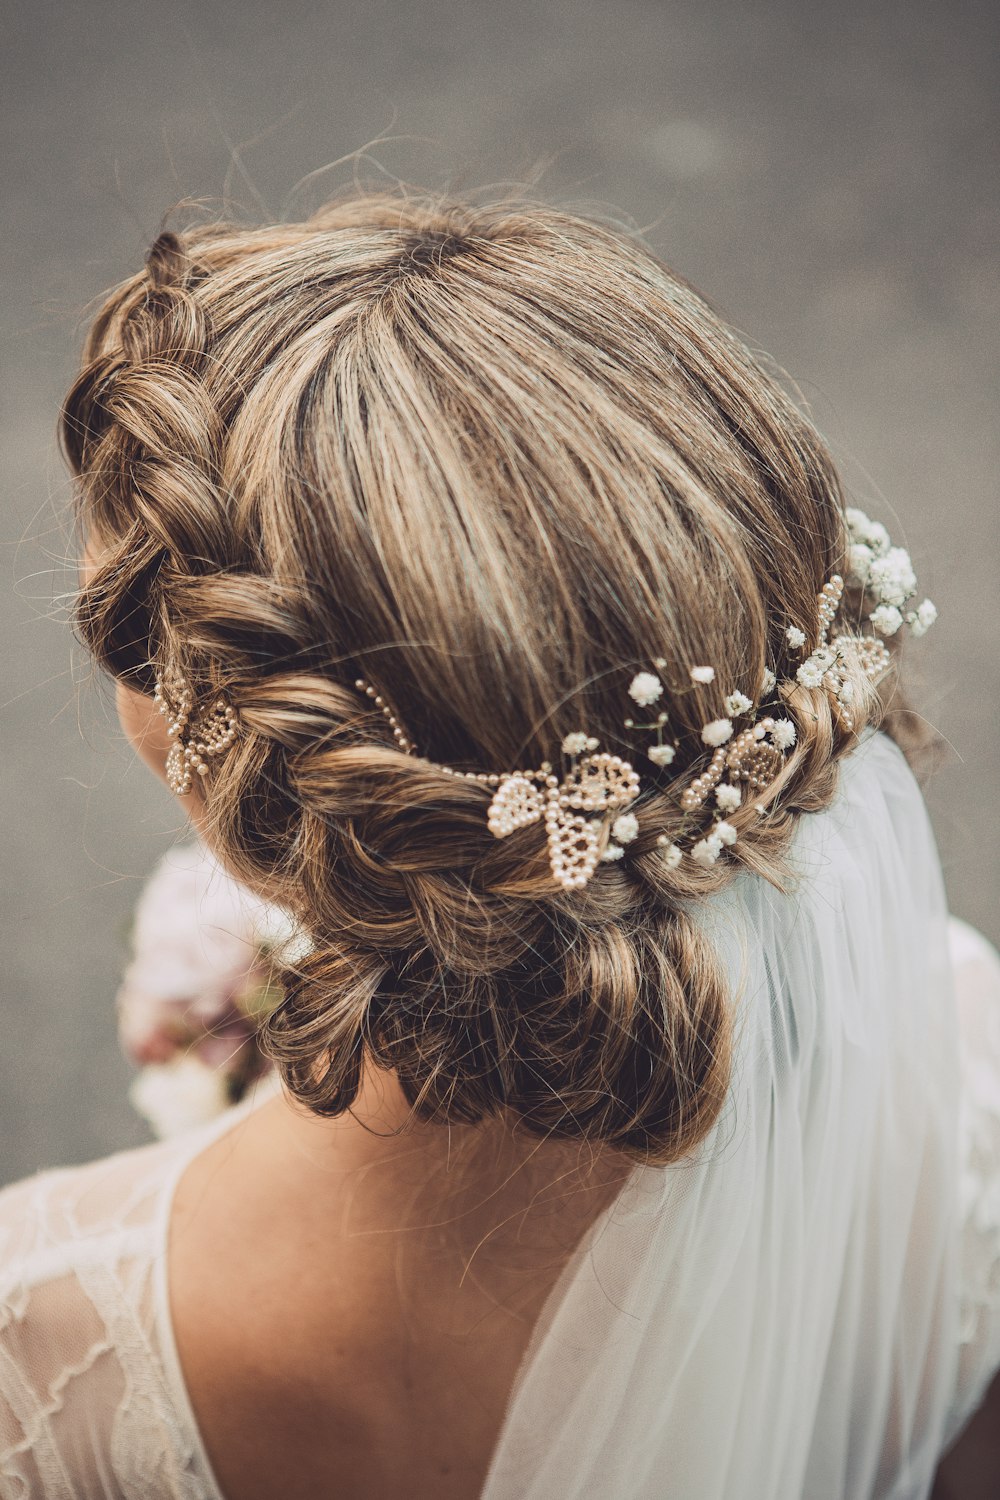 Eine Frau mit einem Hochzeitshaarkamm im Haar